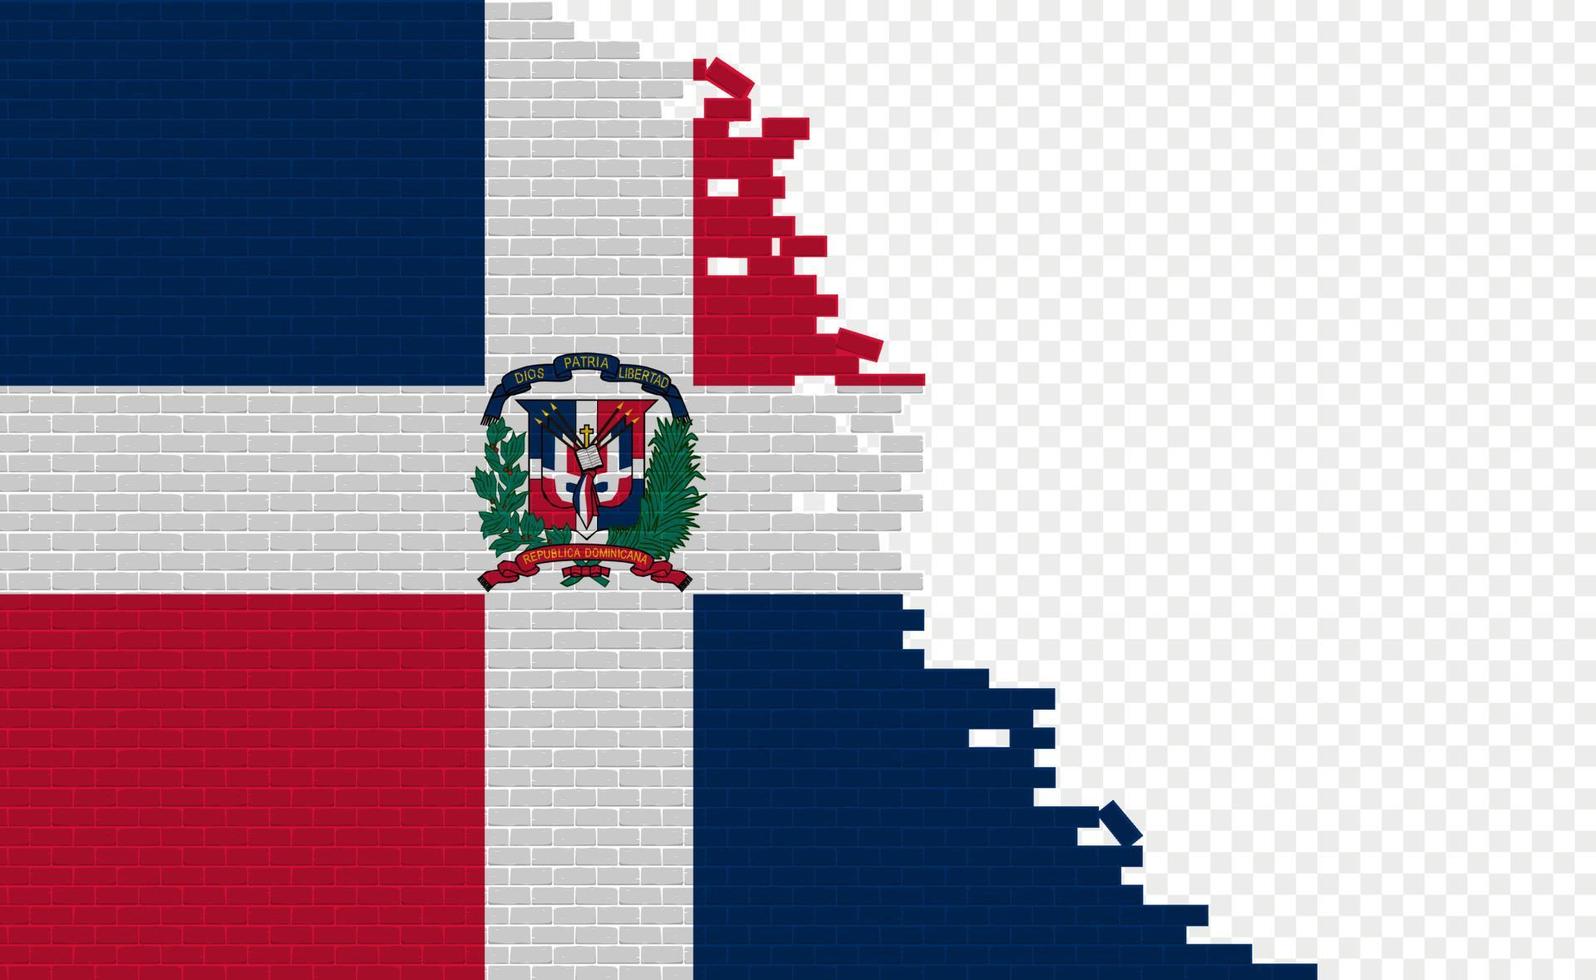 bandera de la república dominicana en la pared de ladrillos rotos. campo de bandera vacío de otro país. comparación de países. fácil edición y vector en grupos.